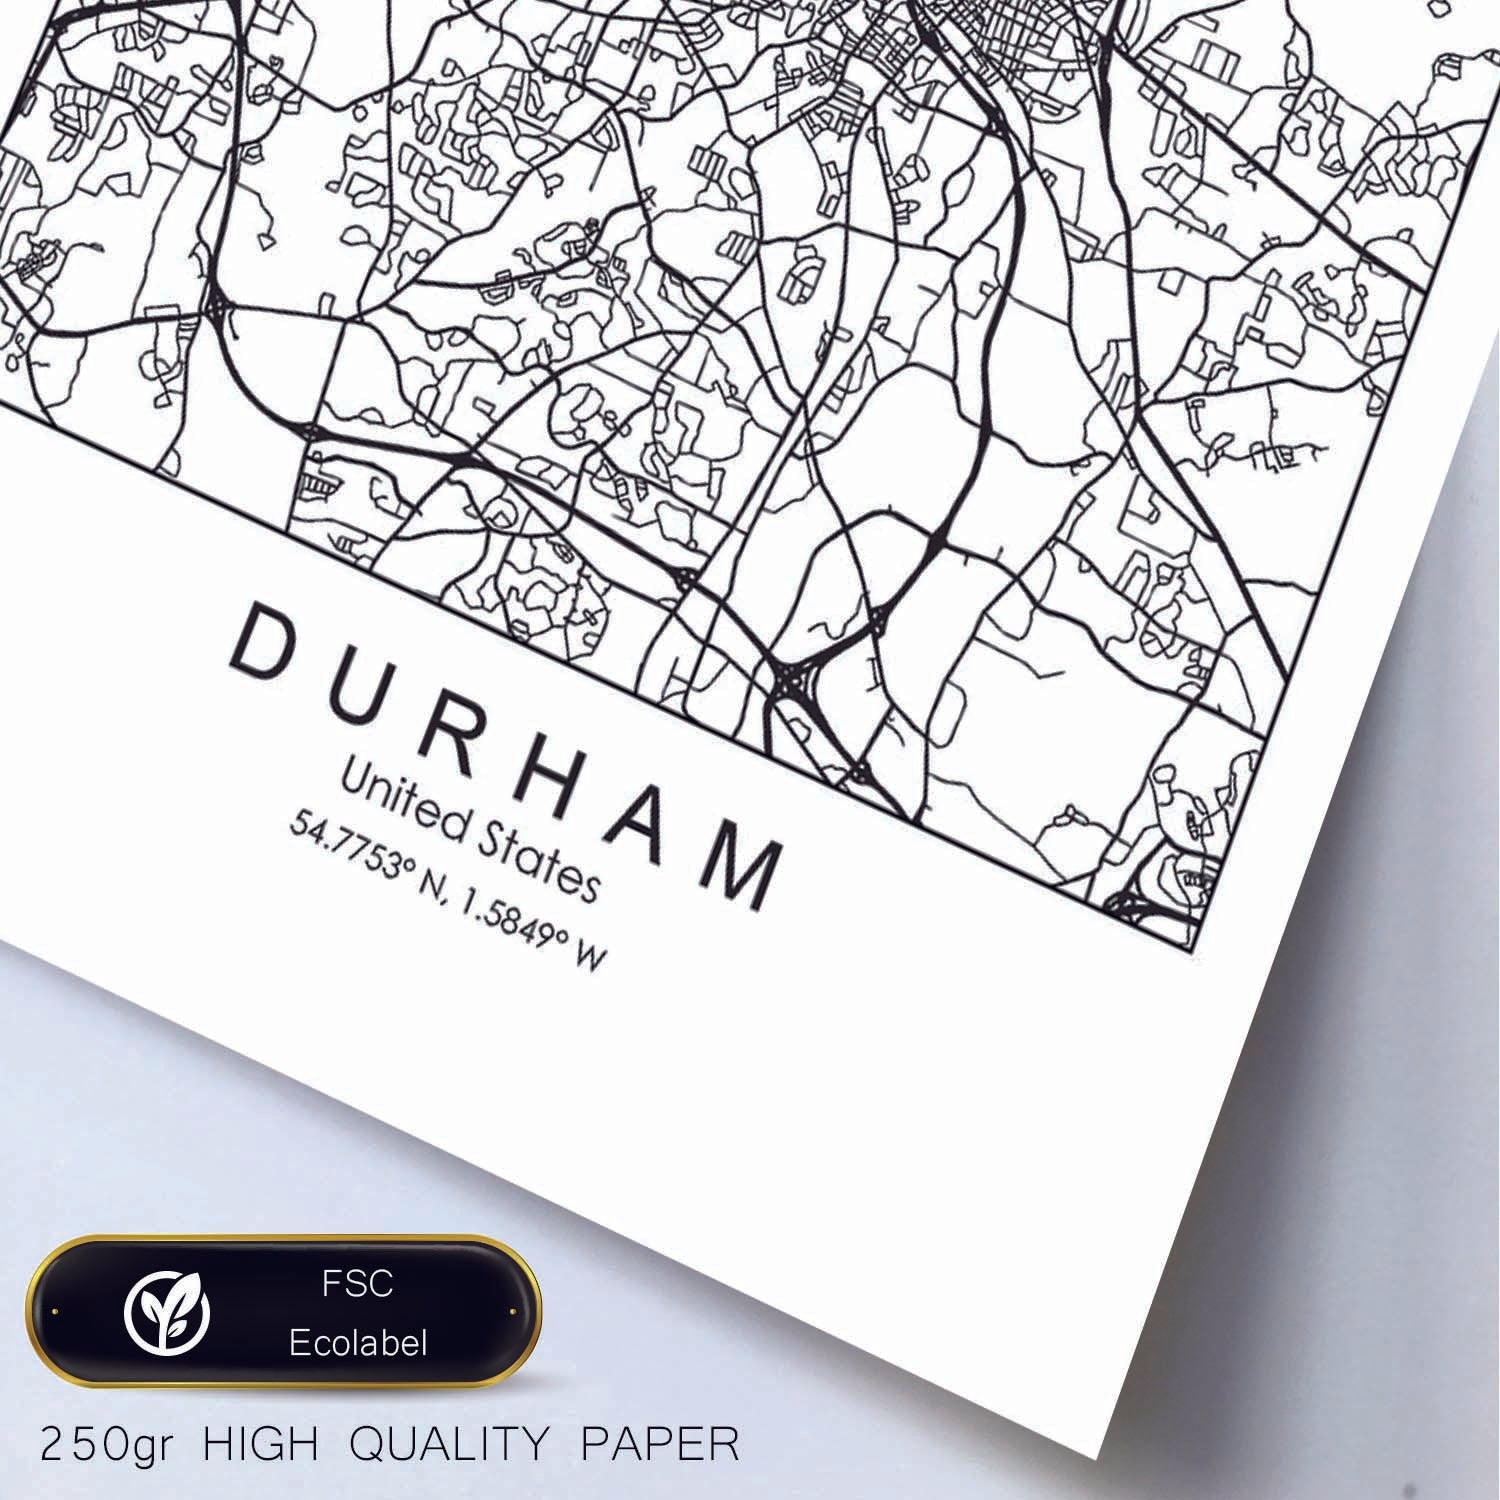 Poster con mapa de Durham. Lámina de Estados Unidos, con imágenes de mapas y carreteras-Artwork-Nacnic-Nacnic Estudio SL